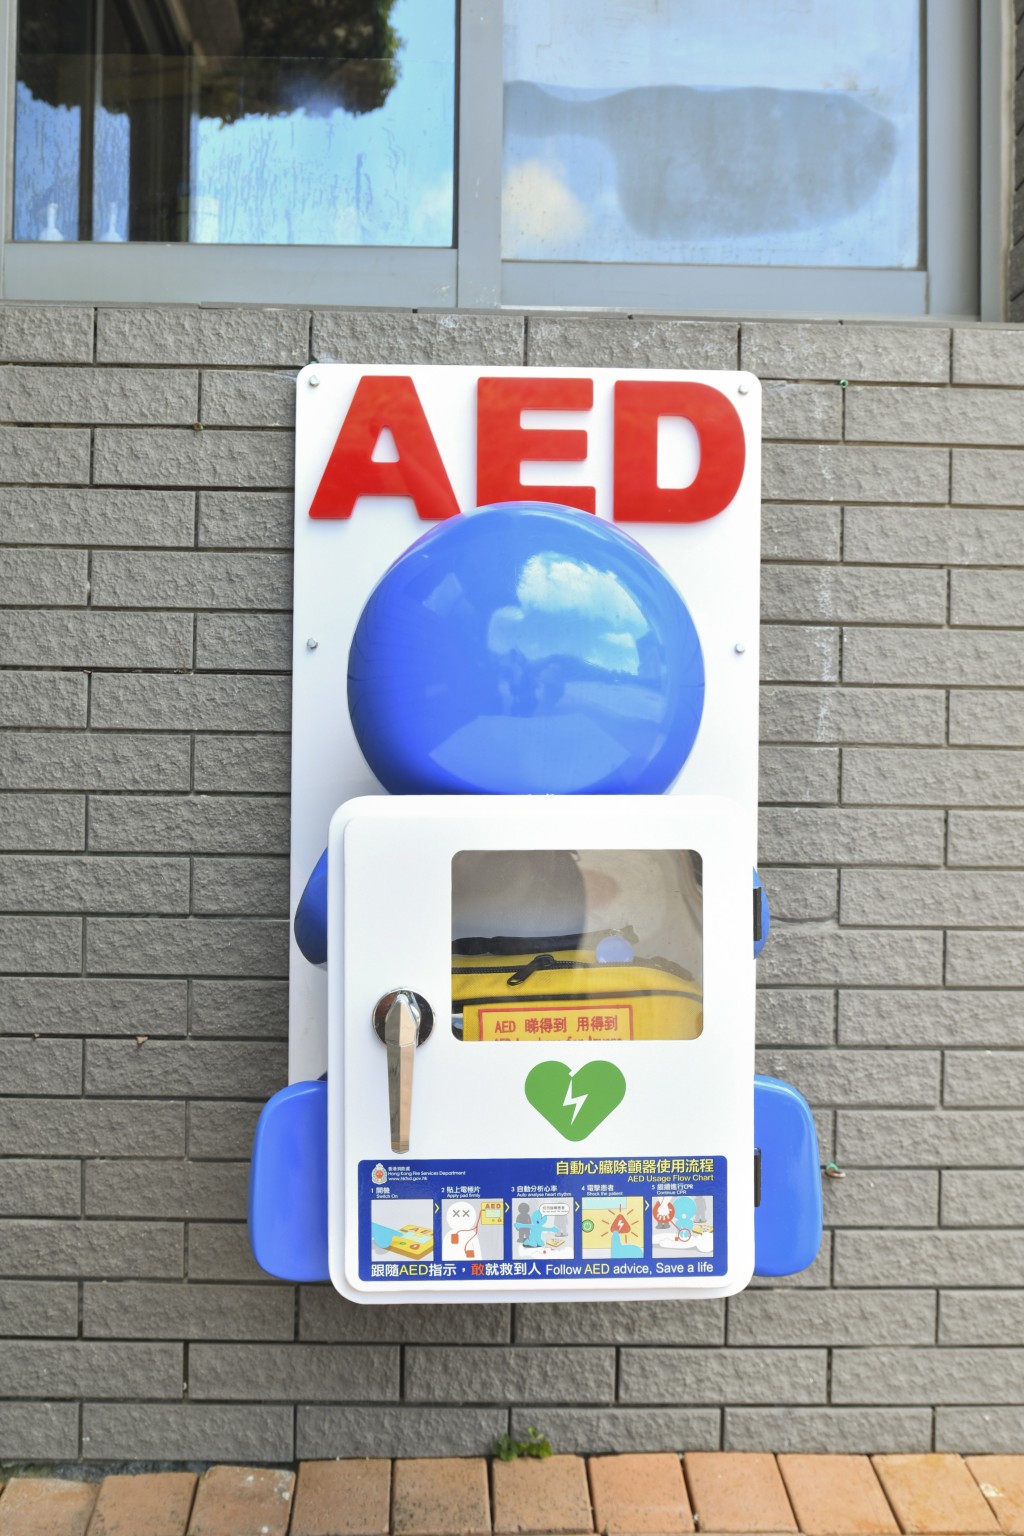 消防处成立「救心同仁」联盟，推广心肺复苏法（CPR）及自动心脏除颤器（AED）的普及应用。资料图片